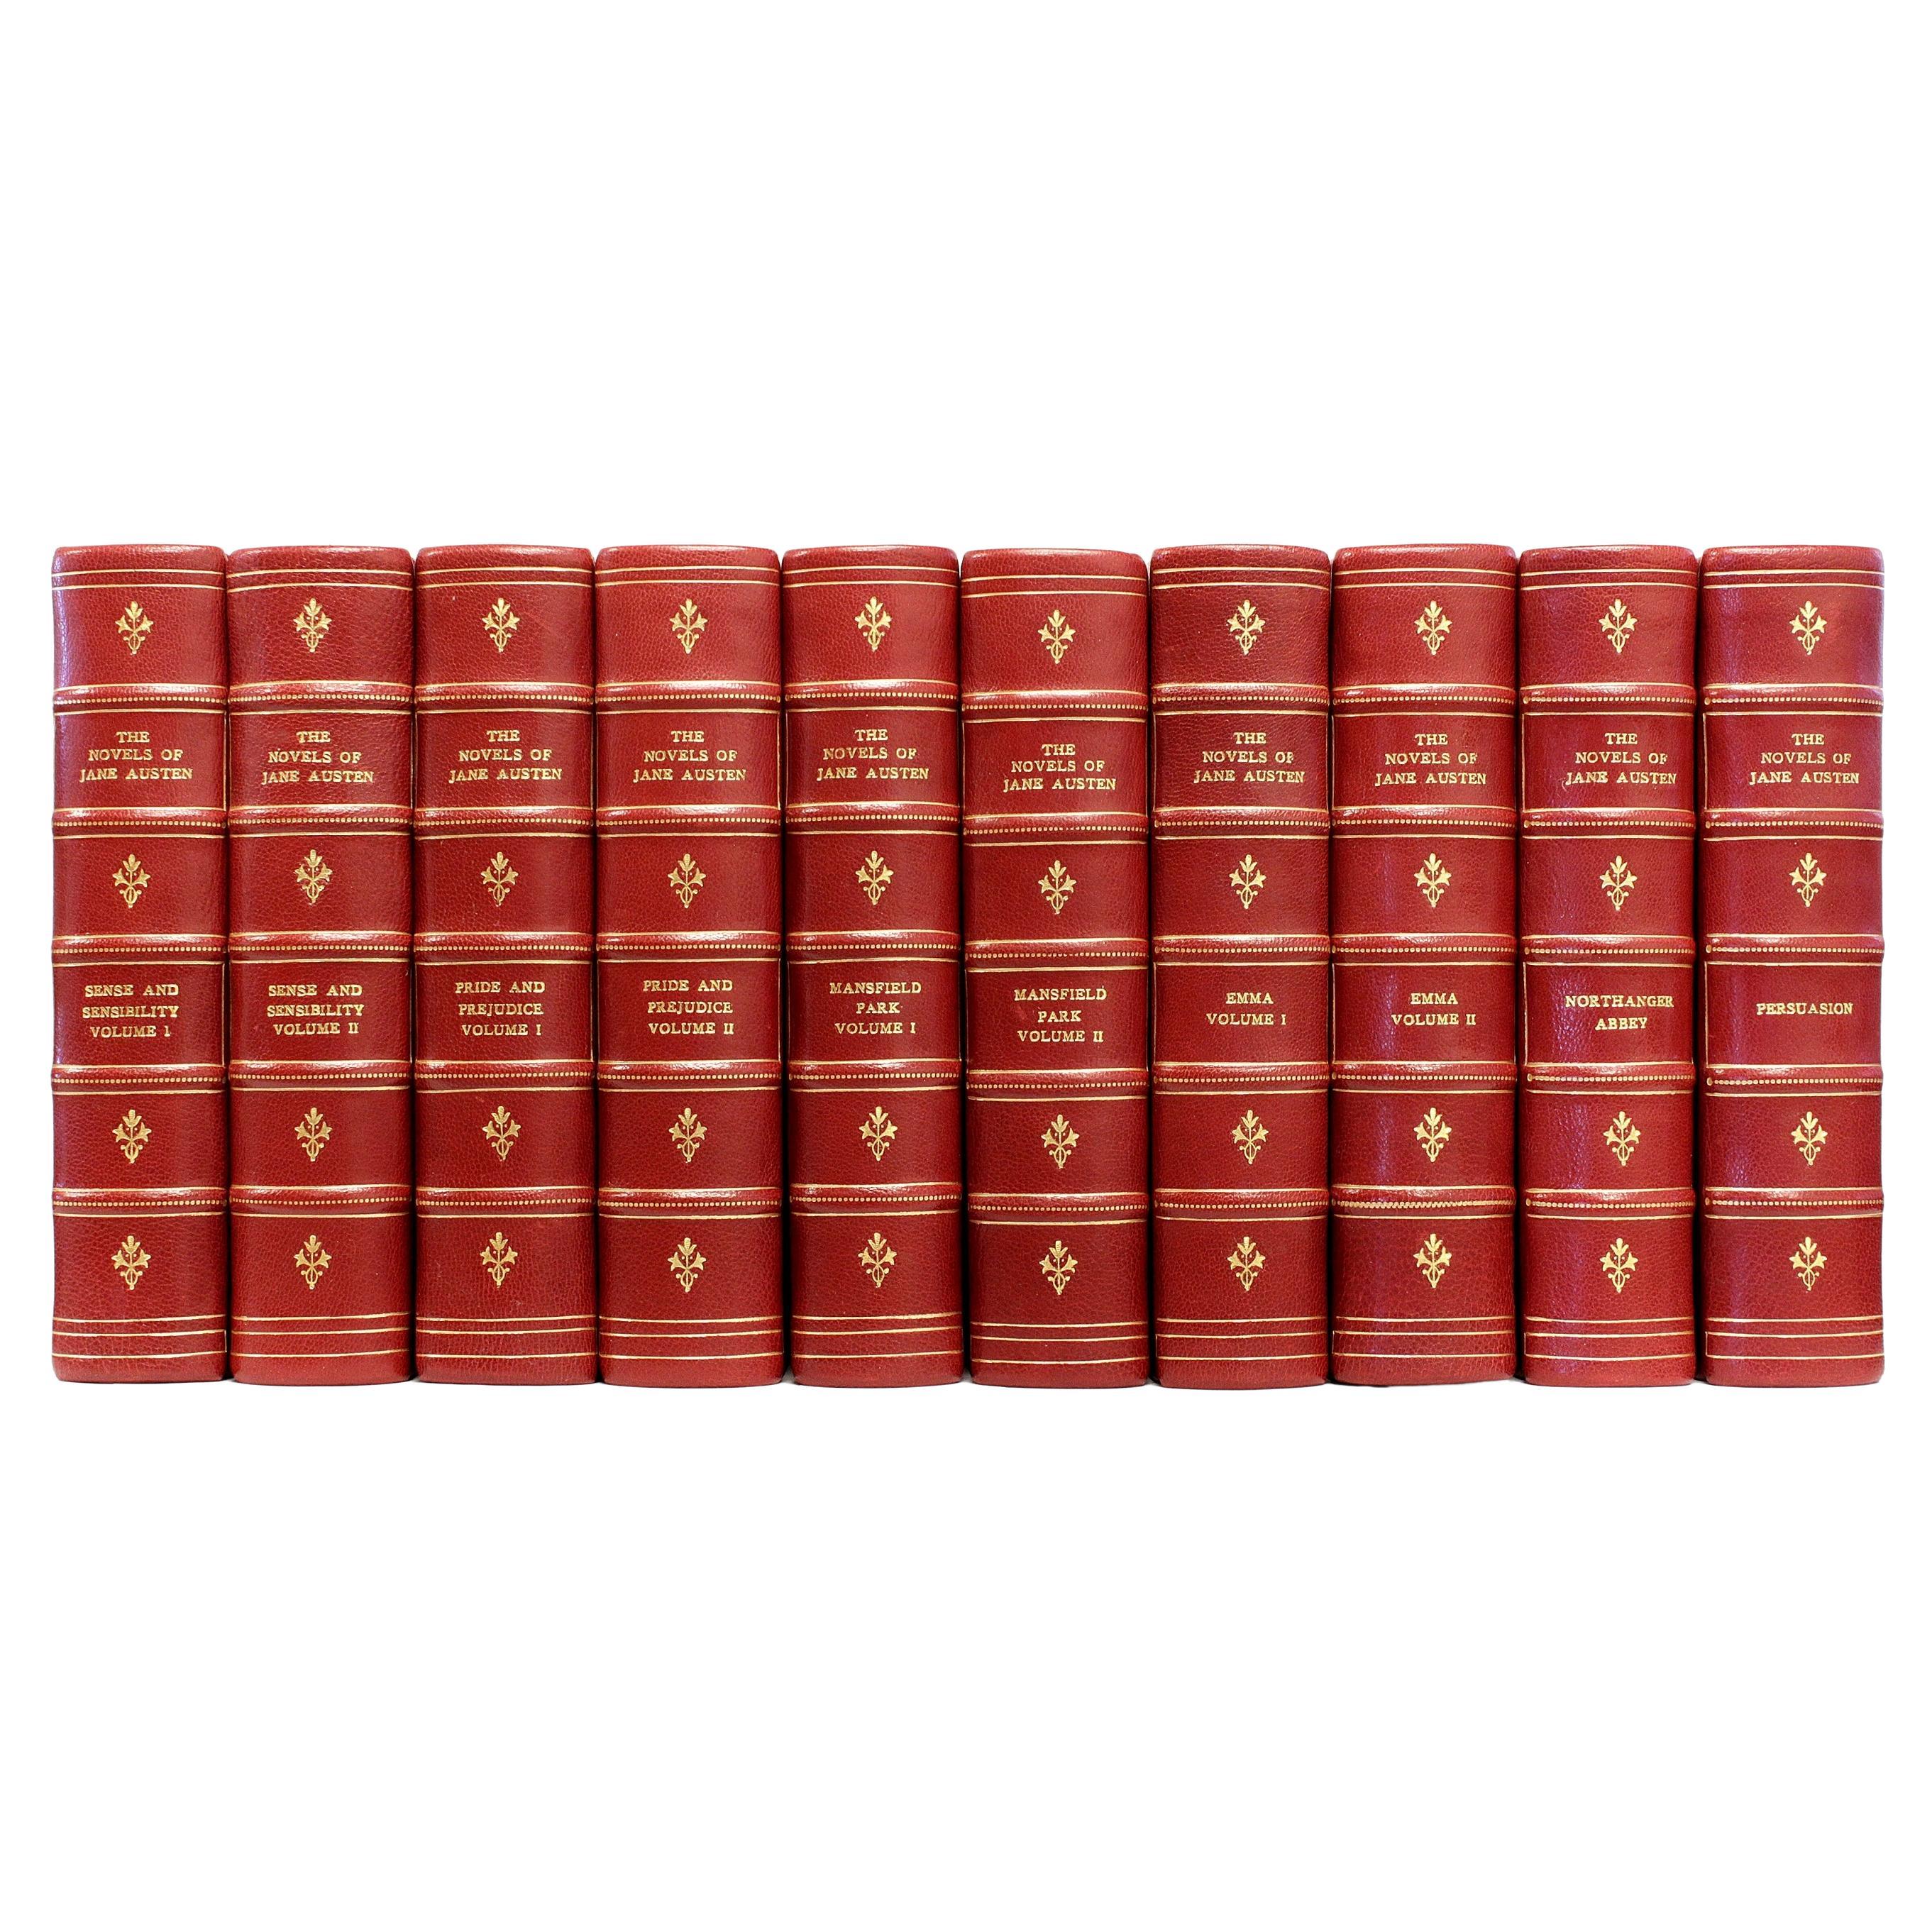 Novels de Jane Austen Édition Winchester, 10 volumes, 1906 relié en cuir